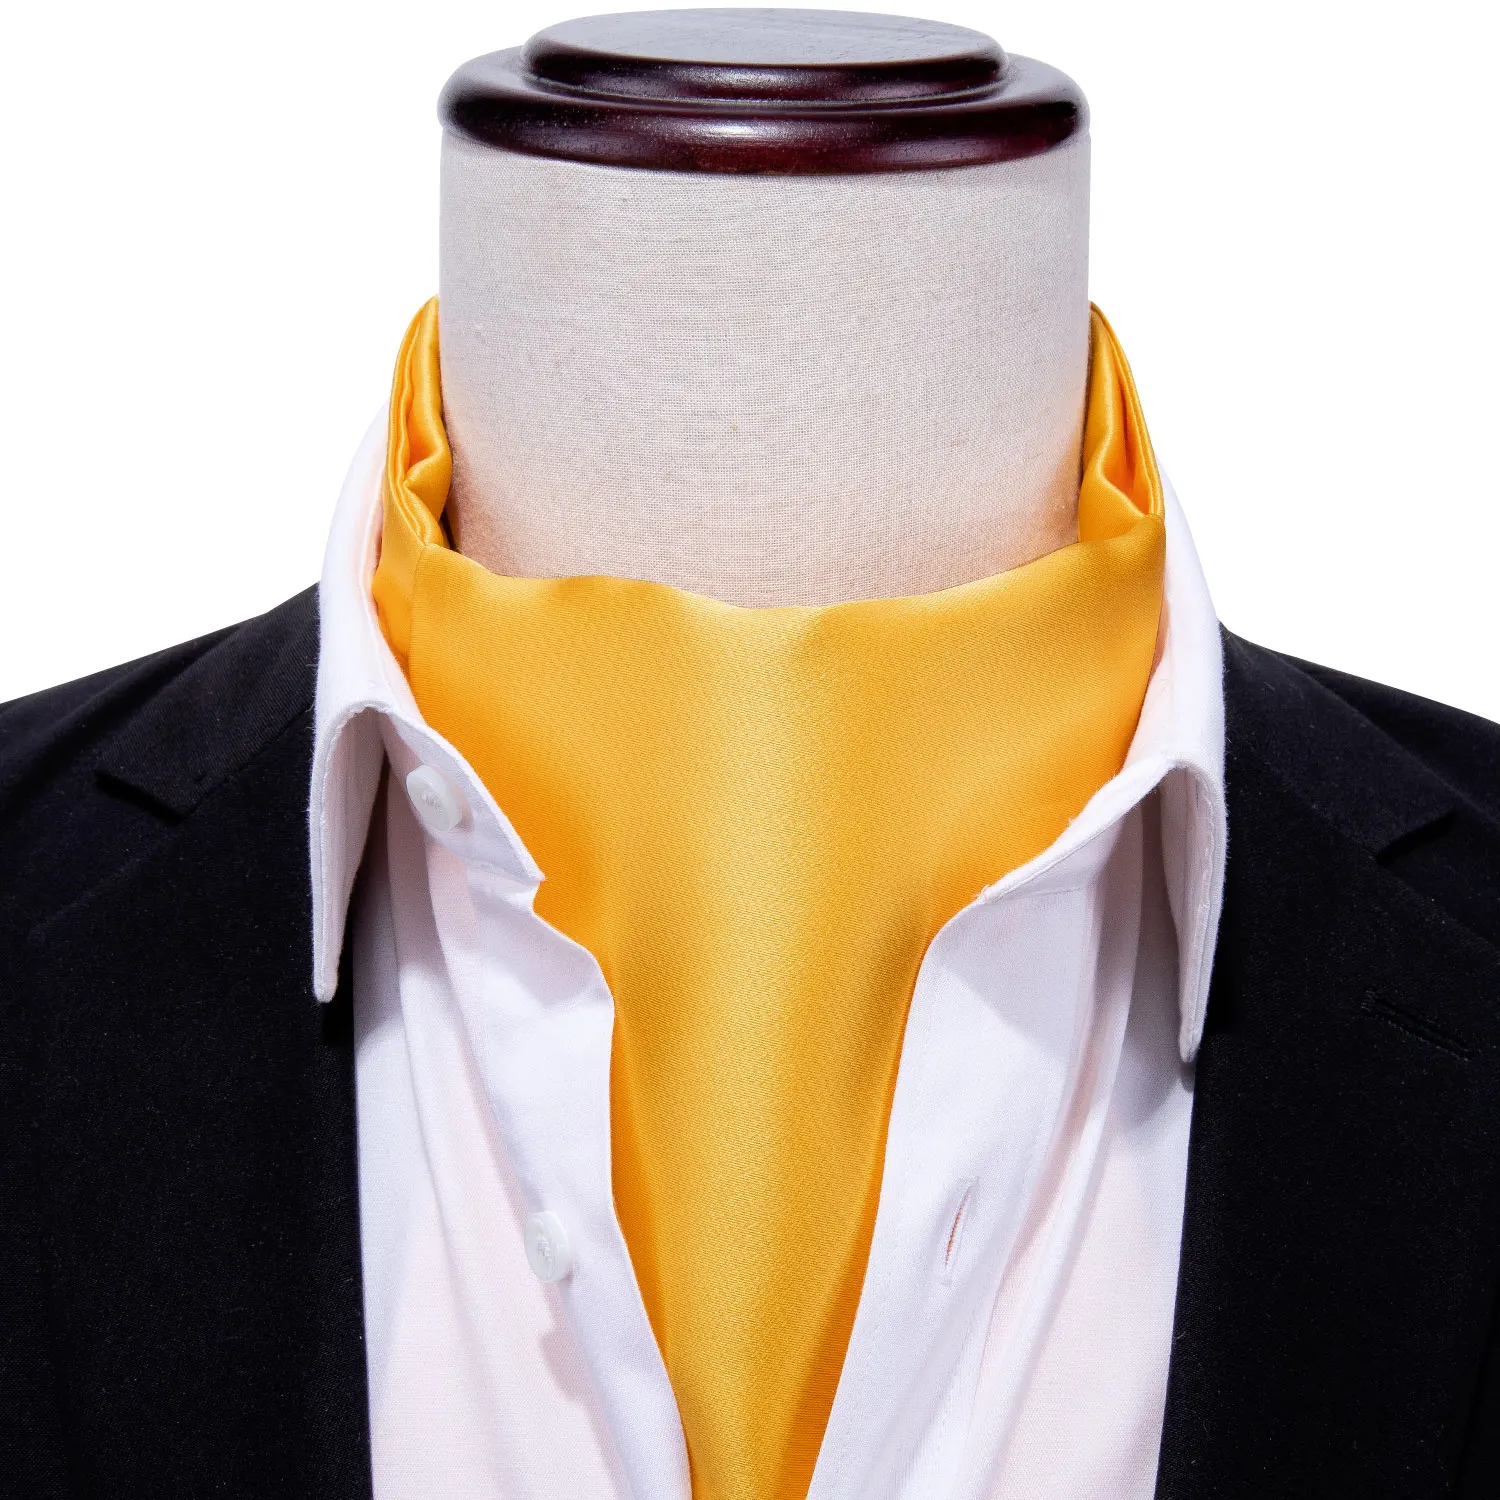 Ярко-желтый галстук Аскот для мужчин шелковый шарф галстук костюм мужской фиолетовый жаккардовый галстук набор карманные Квадратные